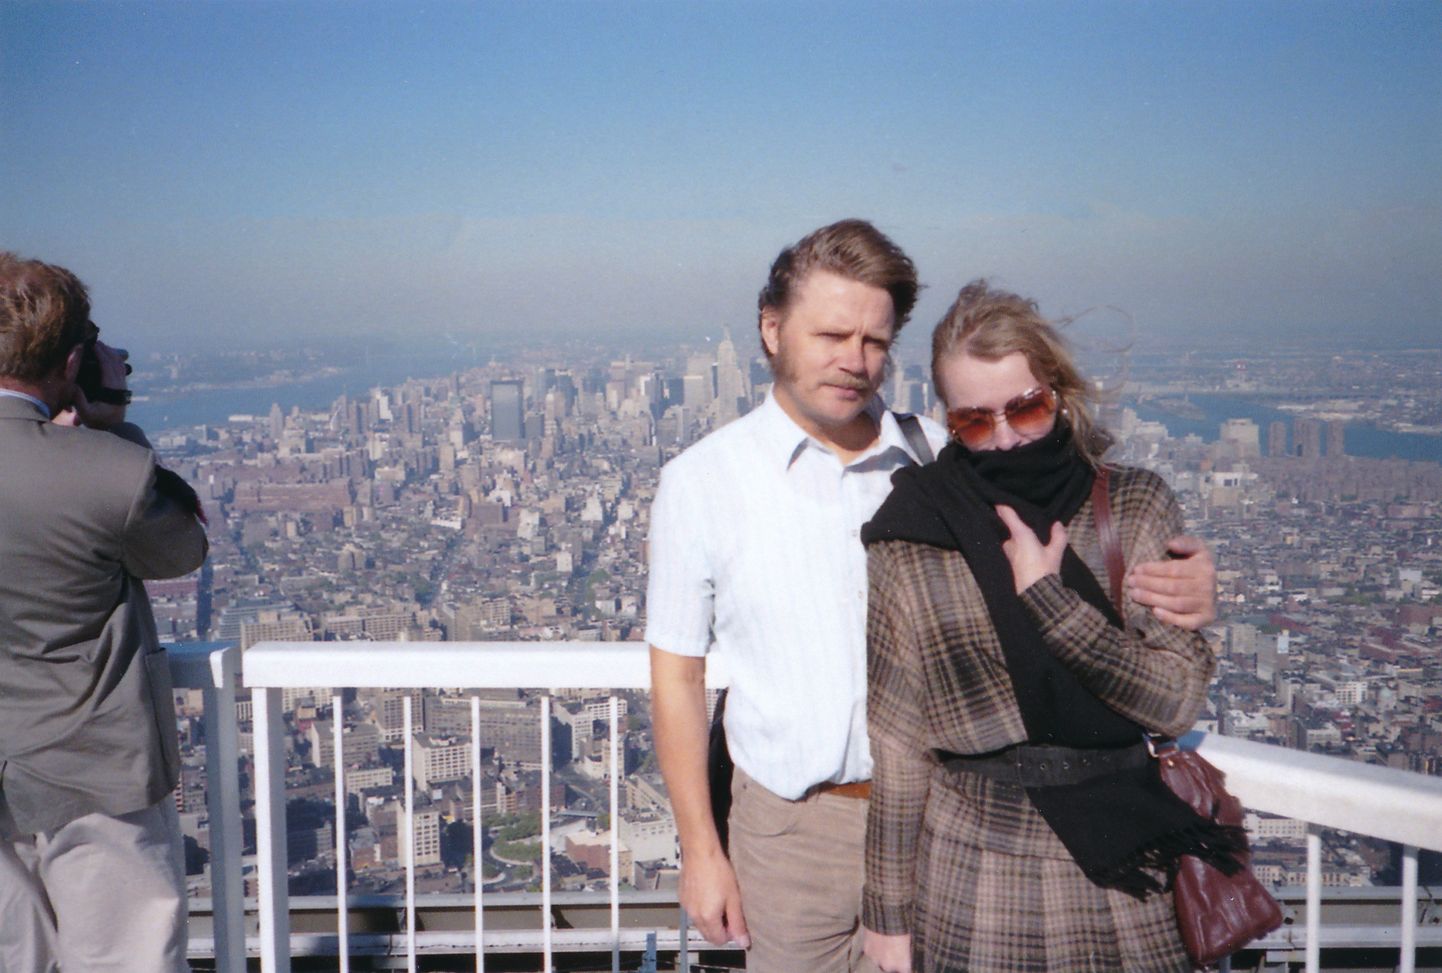 MAAILMA KATUSEL: Vello-Ivar ja Mari Kald New Yorgis Maailma Kaubanduskeskuse tipus. Aasta oli 1988. Tornid hävisid terrorirünnaku tagajärjel 11. septembril 2001.